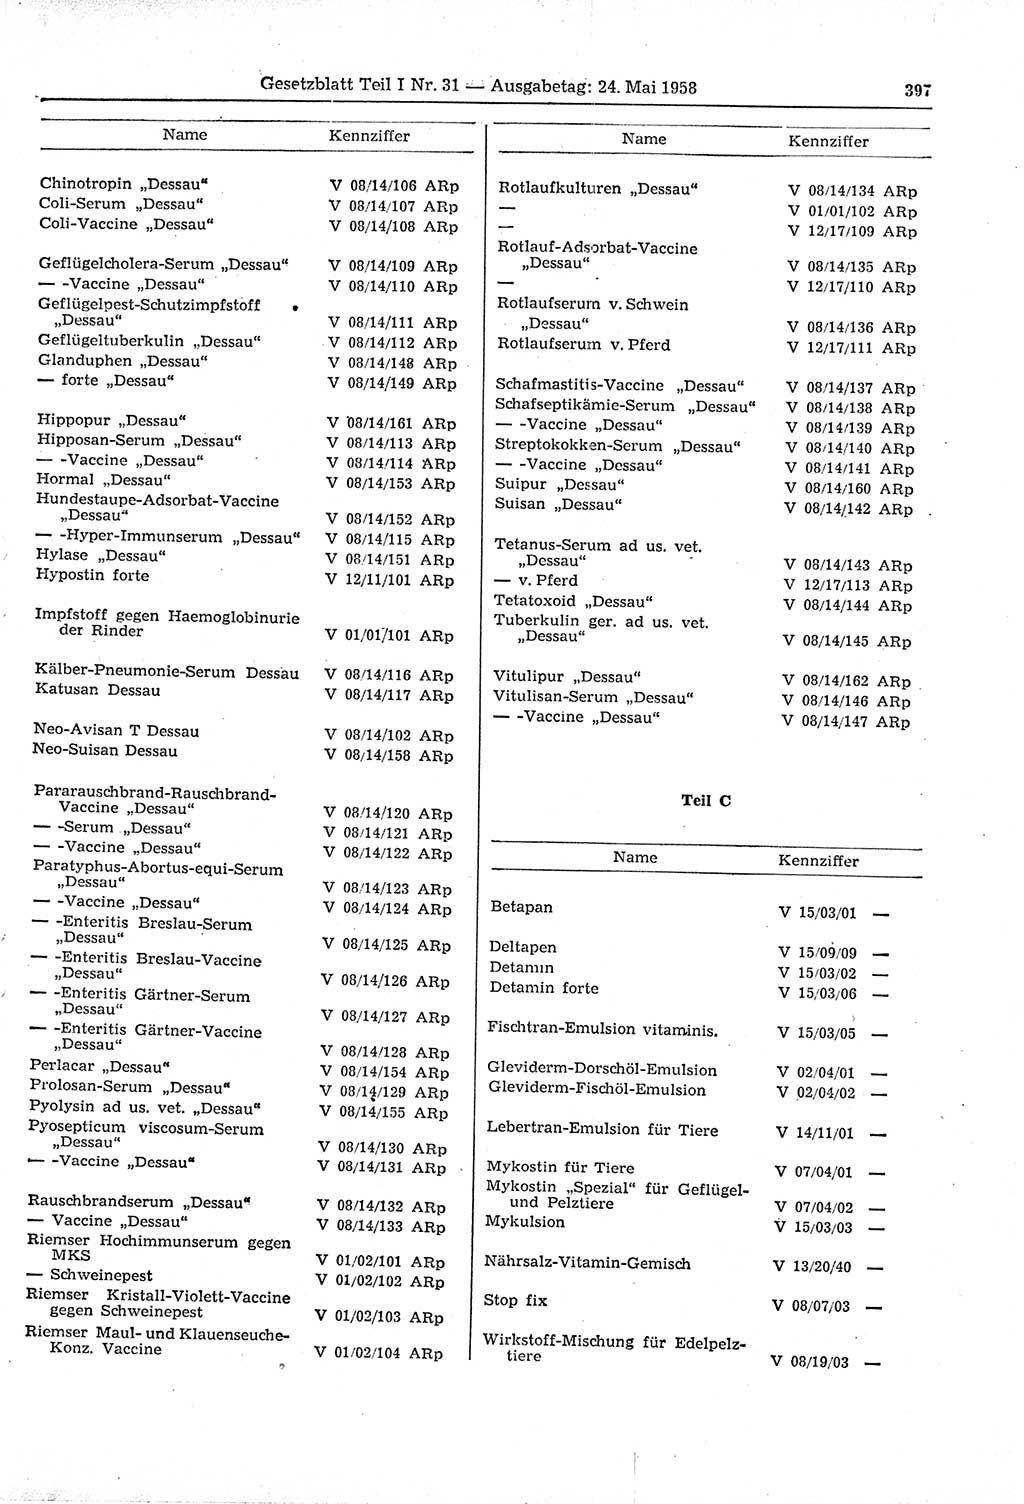 Gesetzblatt (GBl.) der Deutschen Demokratischen Republik (DDR) Teil Ⅰ 1958, Seite 397 (GBl. DDR Ⅰ 1958, S. 397)